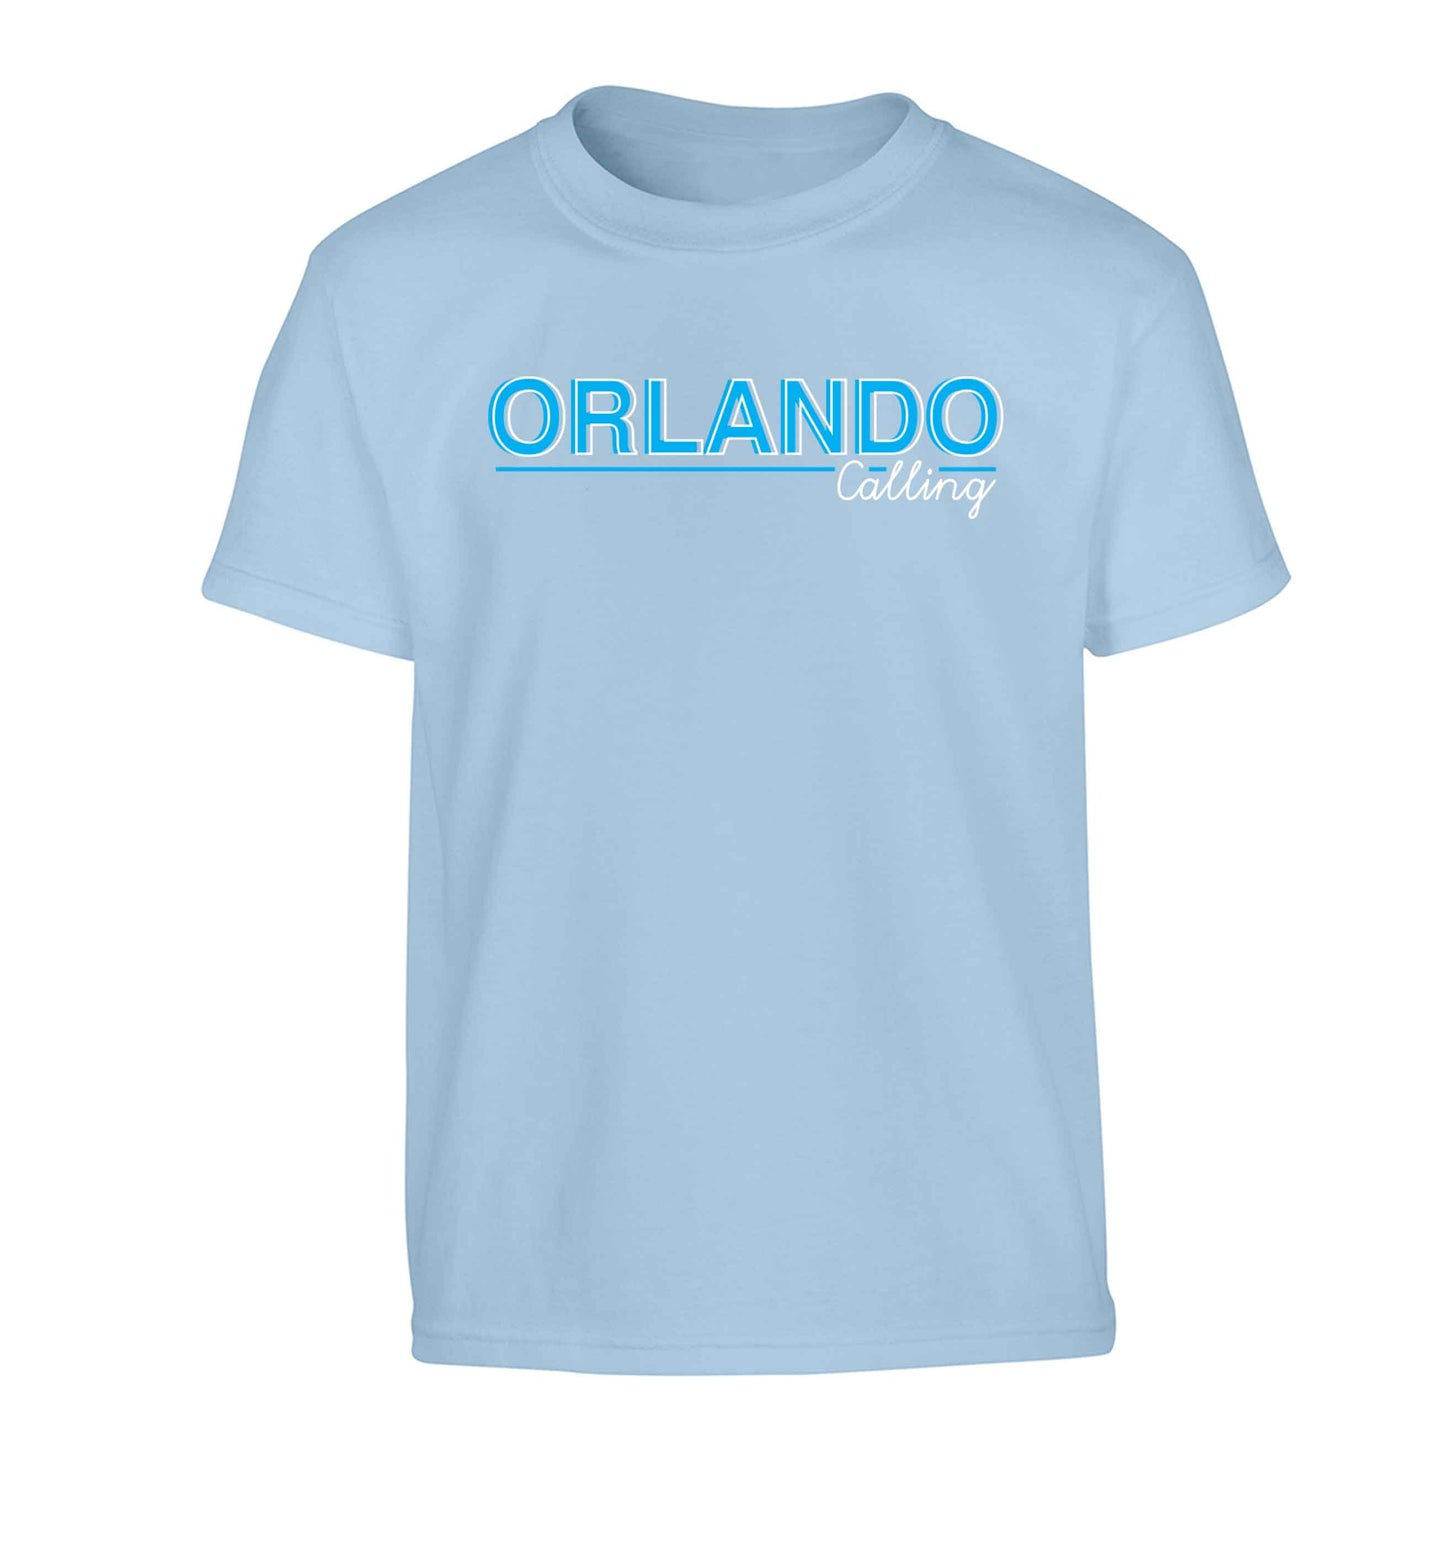 Orlando calling Children's light blue Tshirt 12-13 Years